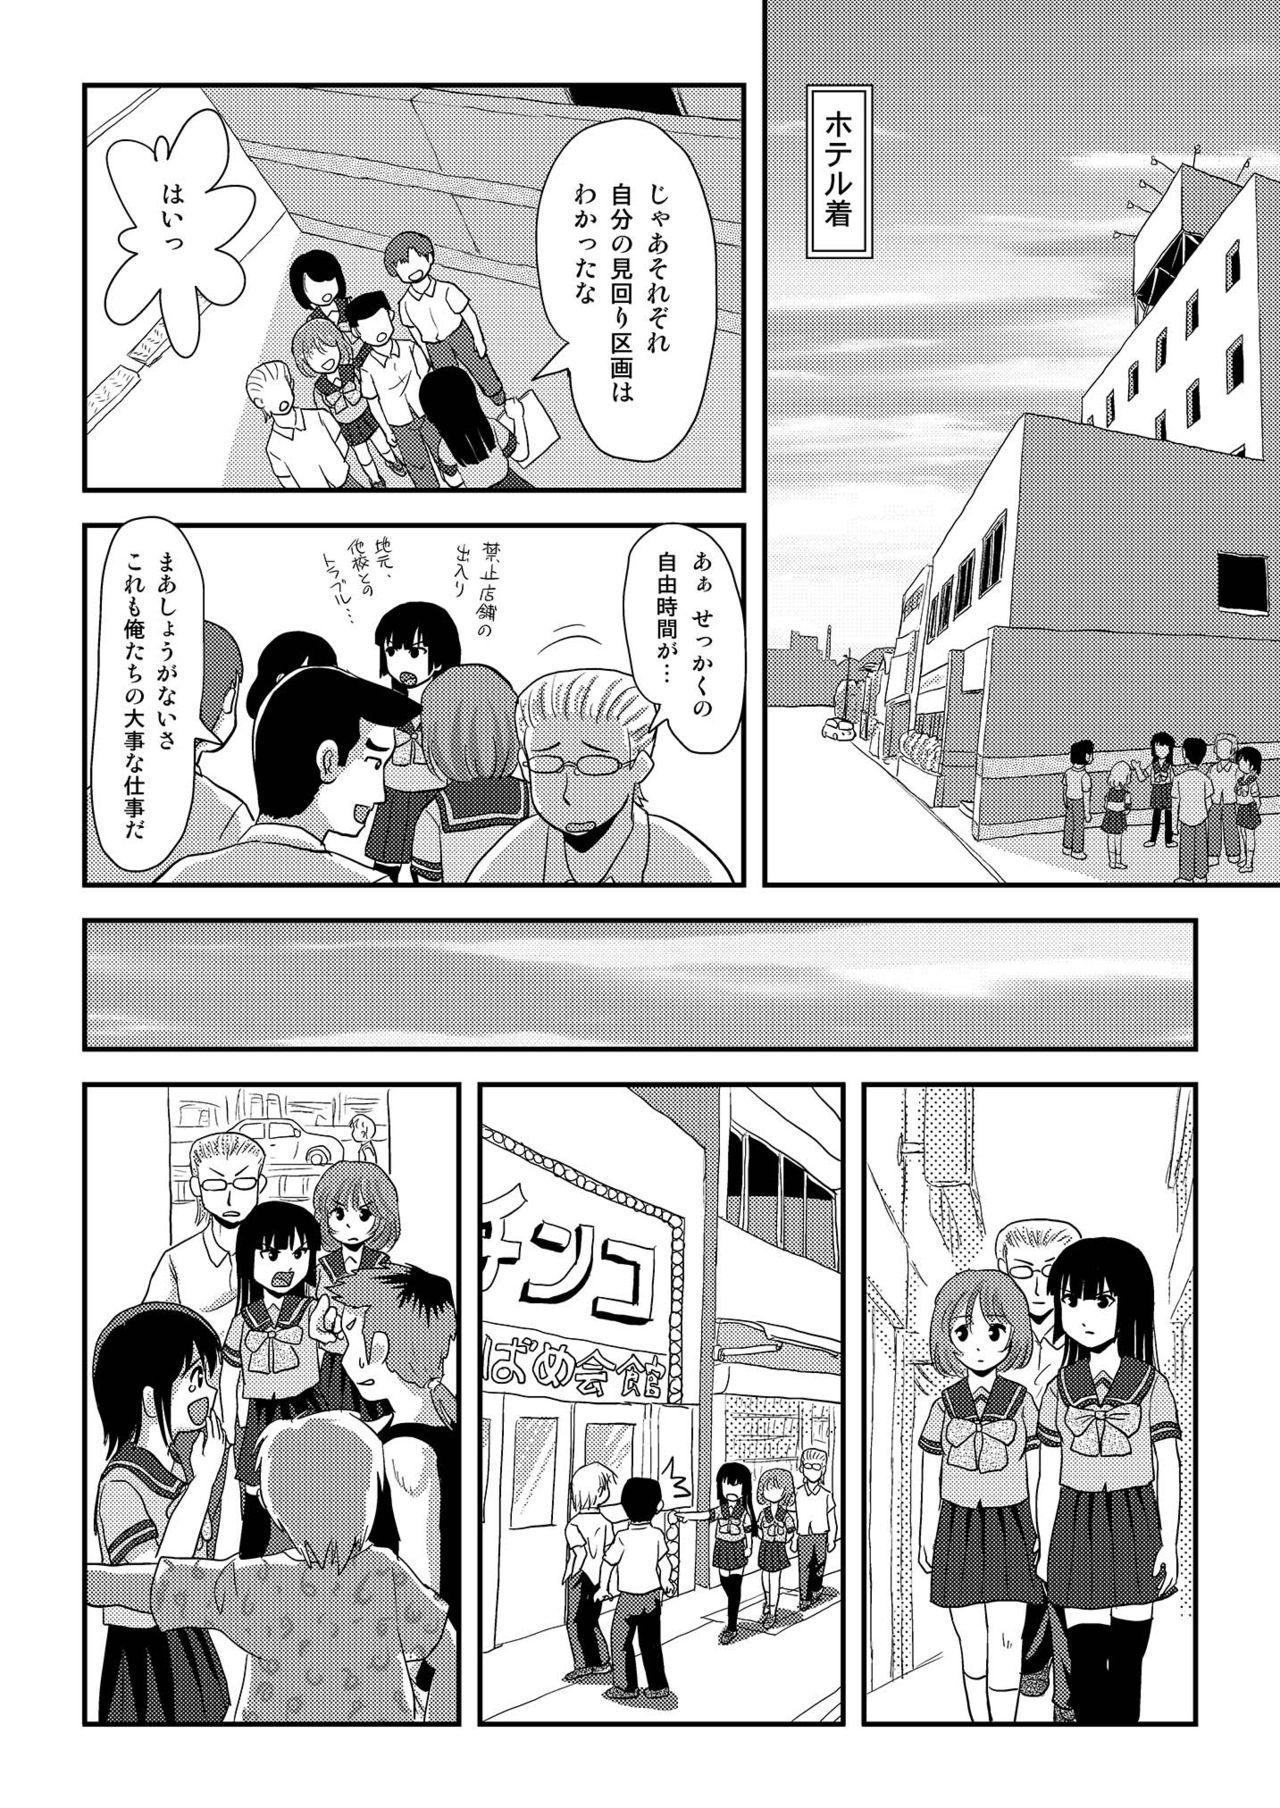 Animation Sakura Kotaka no Roshutsubiyori 6 - Original Blackmail - Page 10